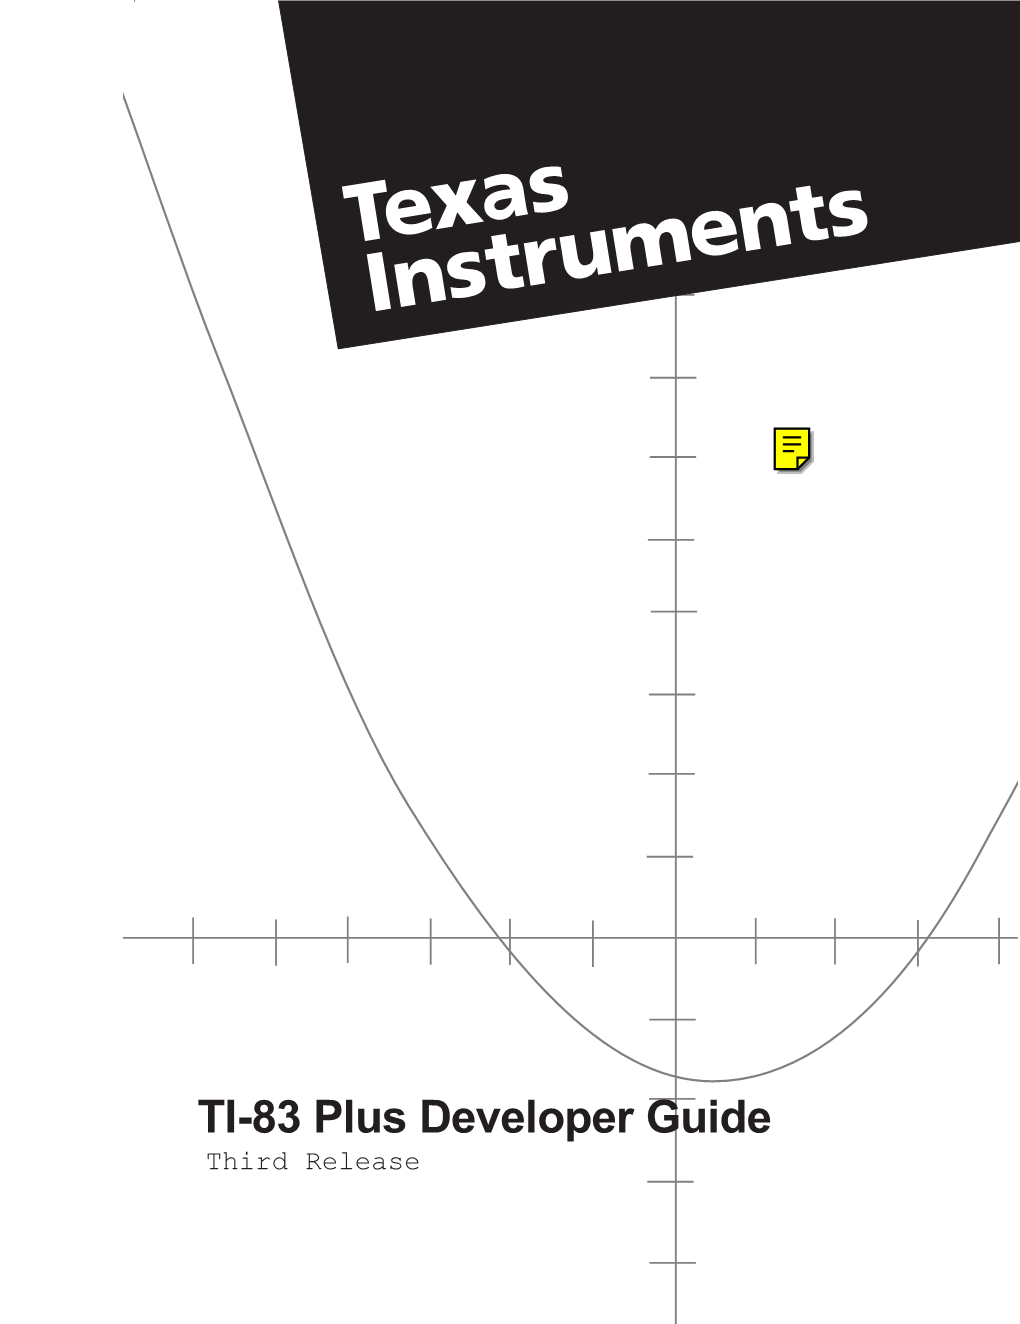 TI-83 Plus Developer Guide Third Release